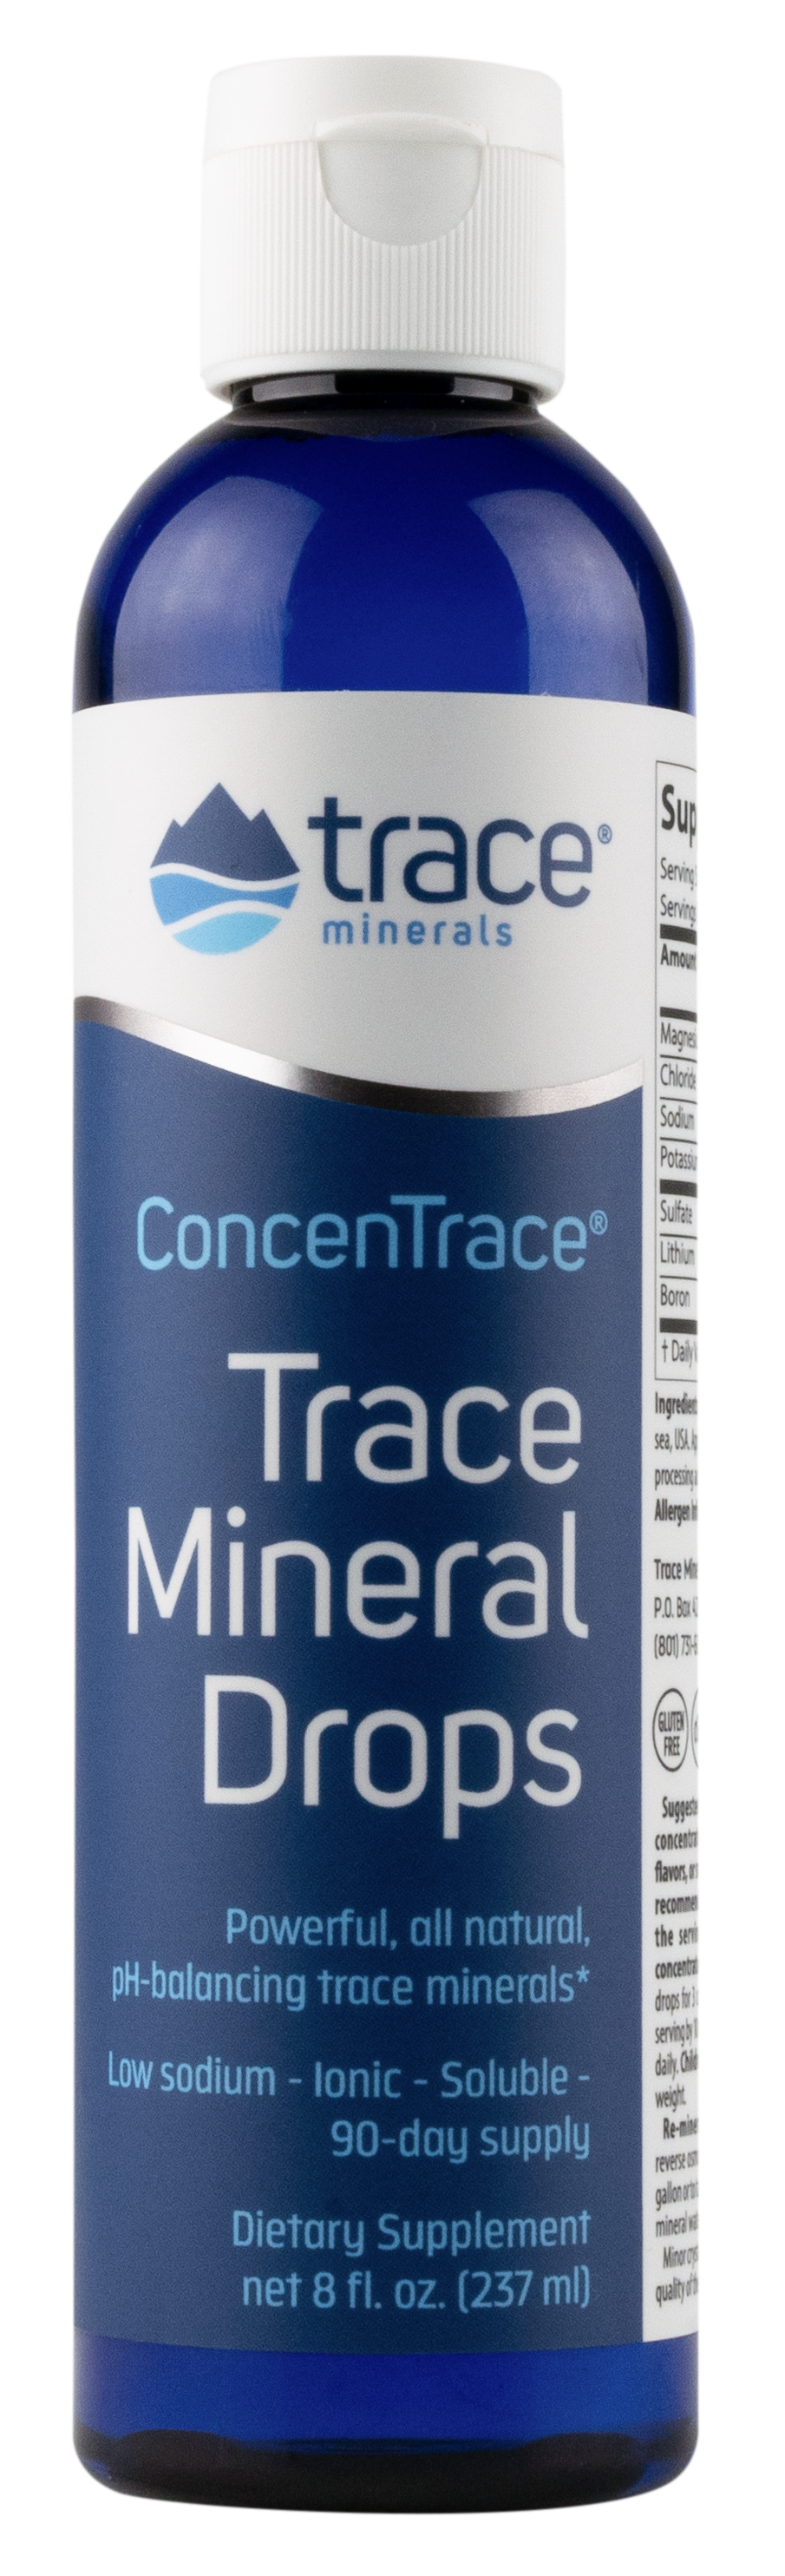 ConcenTrace® Trace Mineral Drops (8oz.)